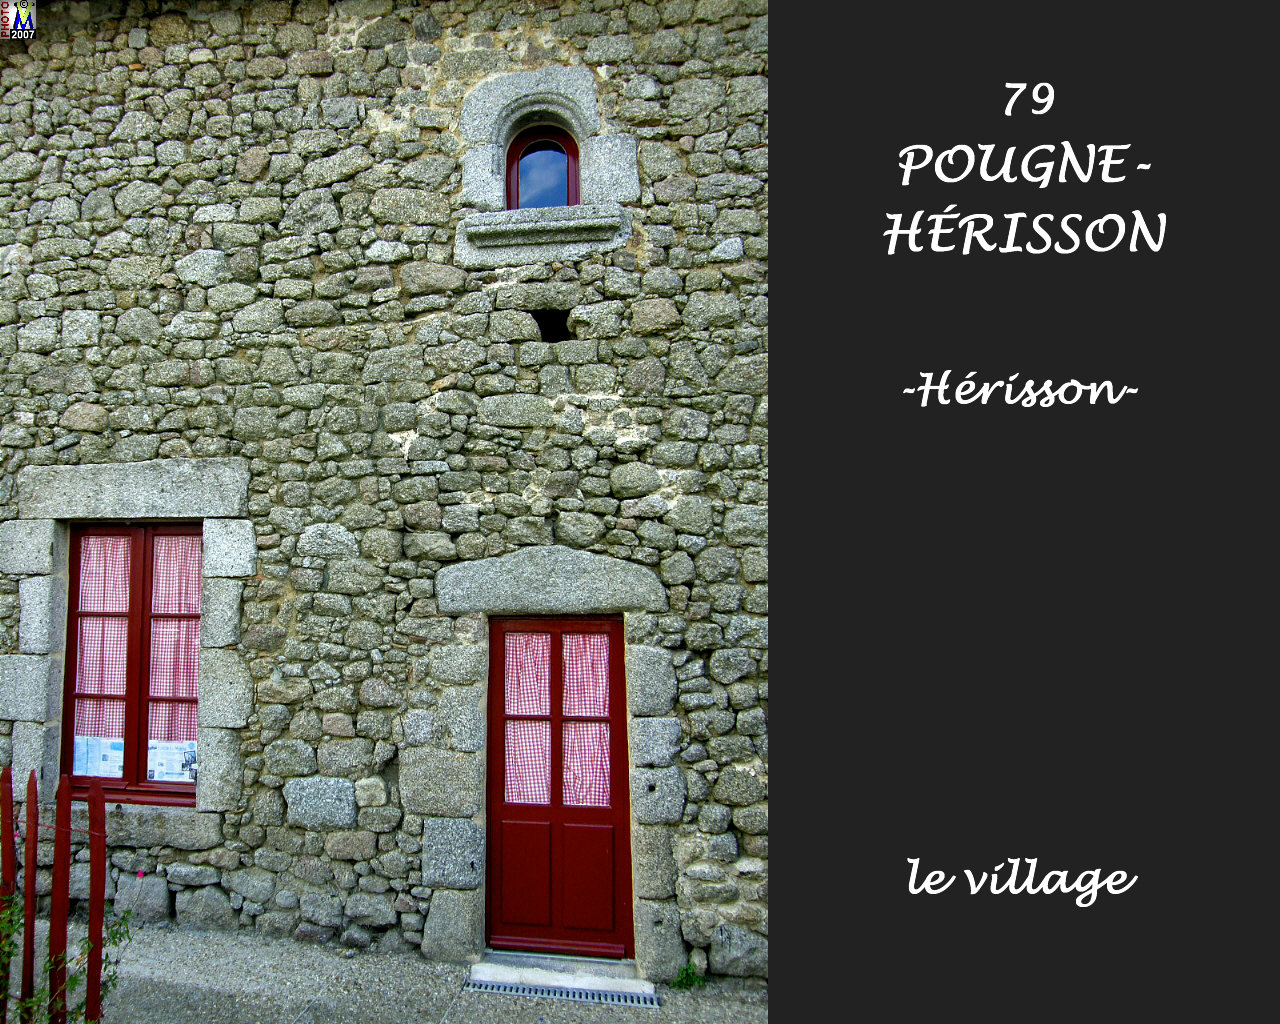 79POUGNE-HERISSON_herisson_village_102.jpg